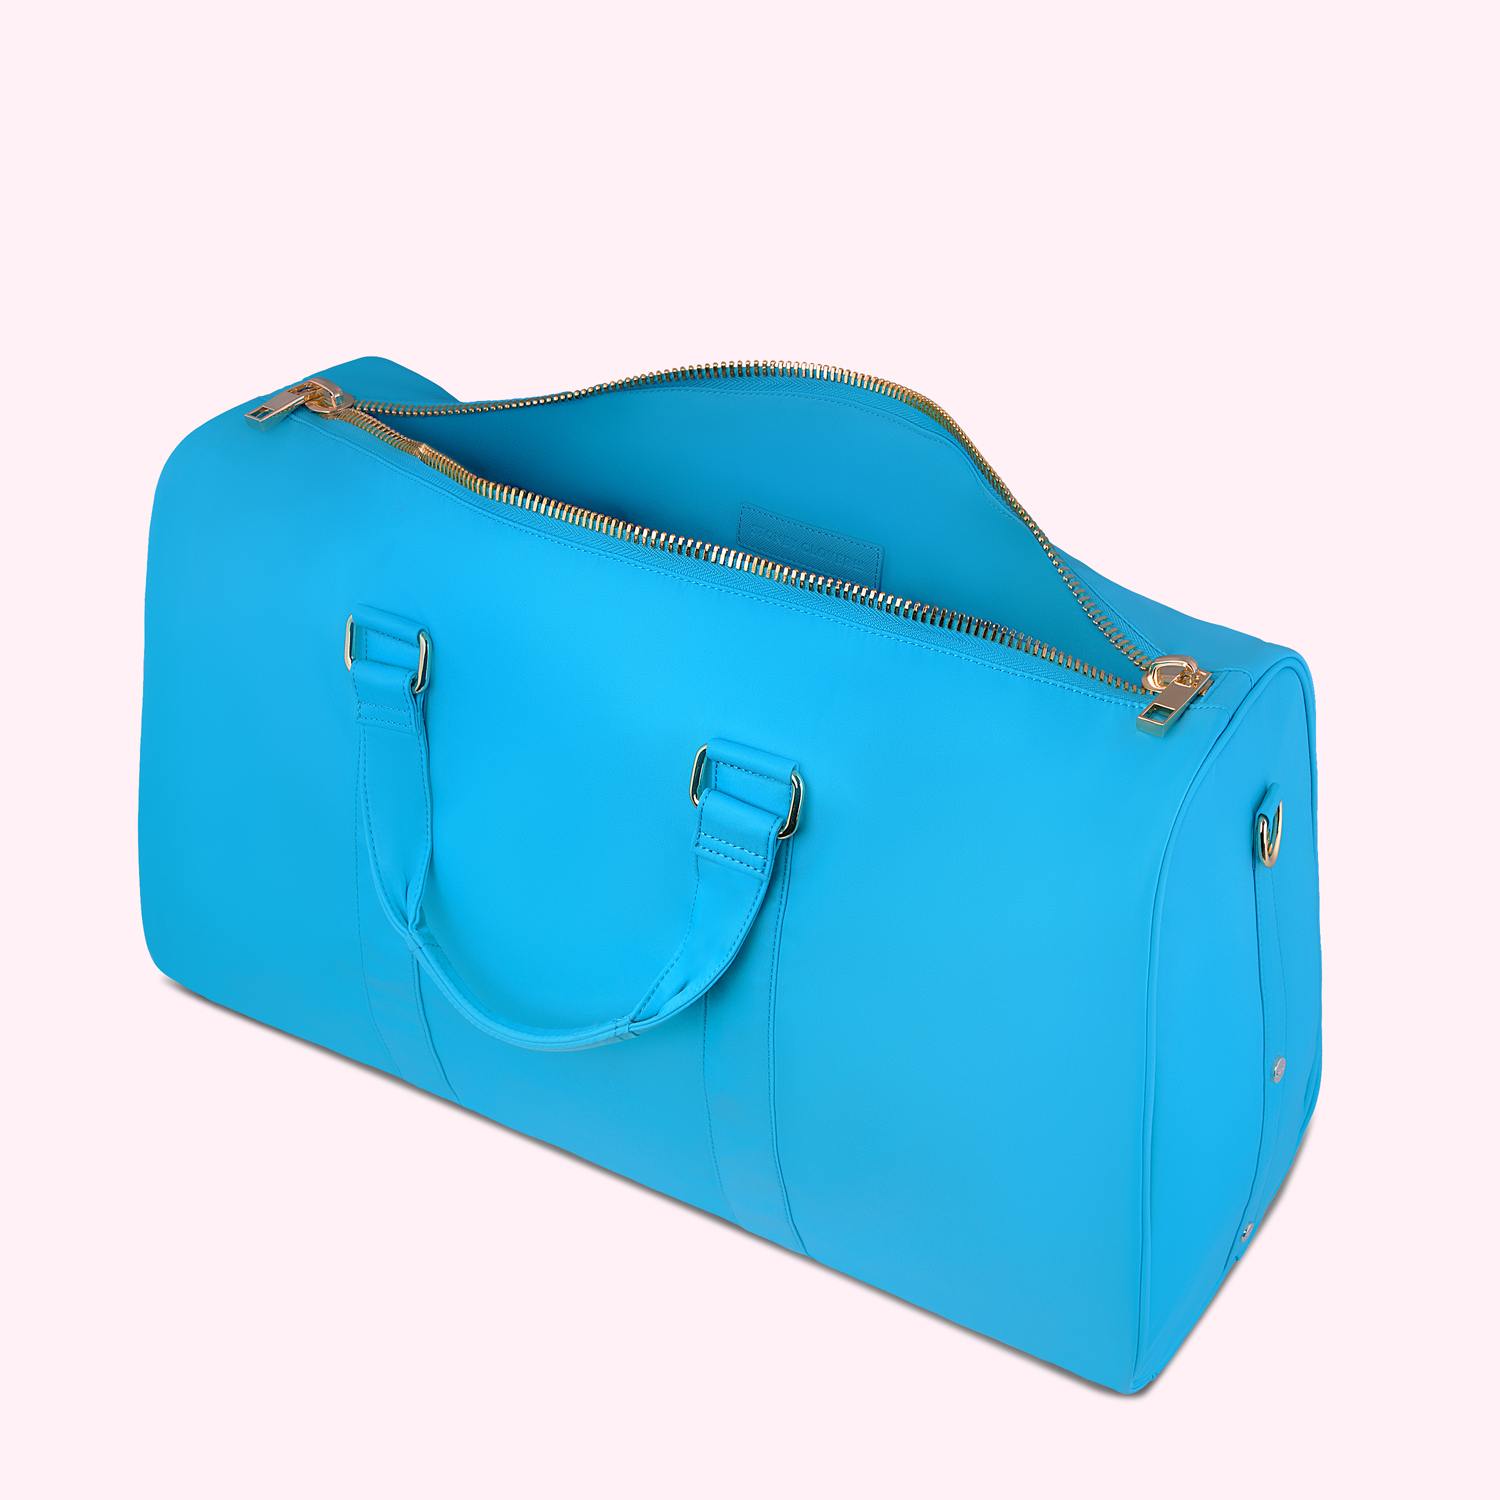 lv blue duffle bag